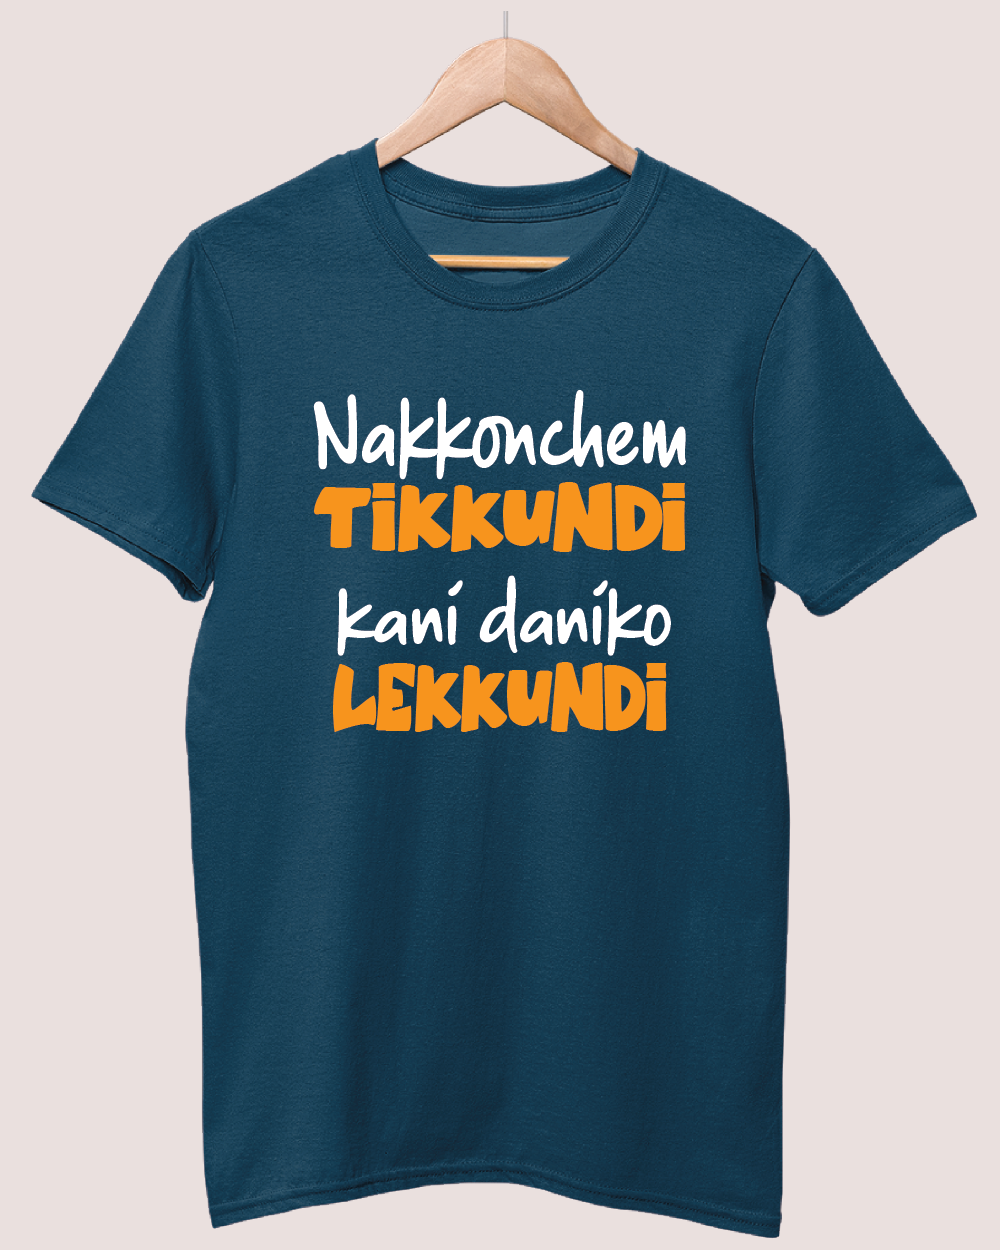 Nakkonchem Tikkundi kani daaniko lekkundi T-shirt